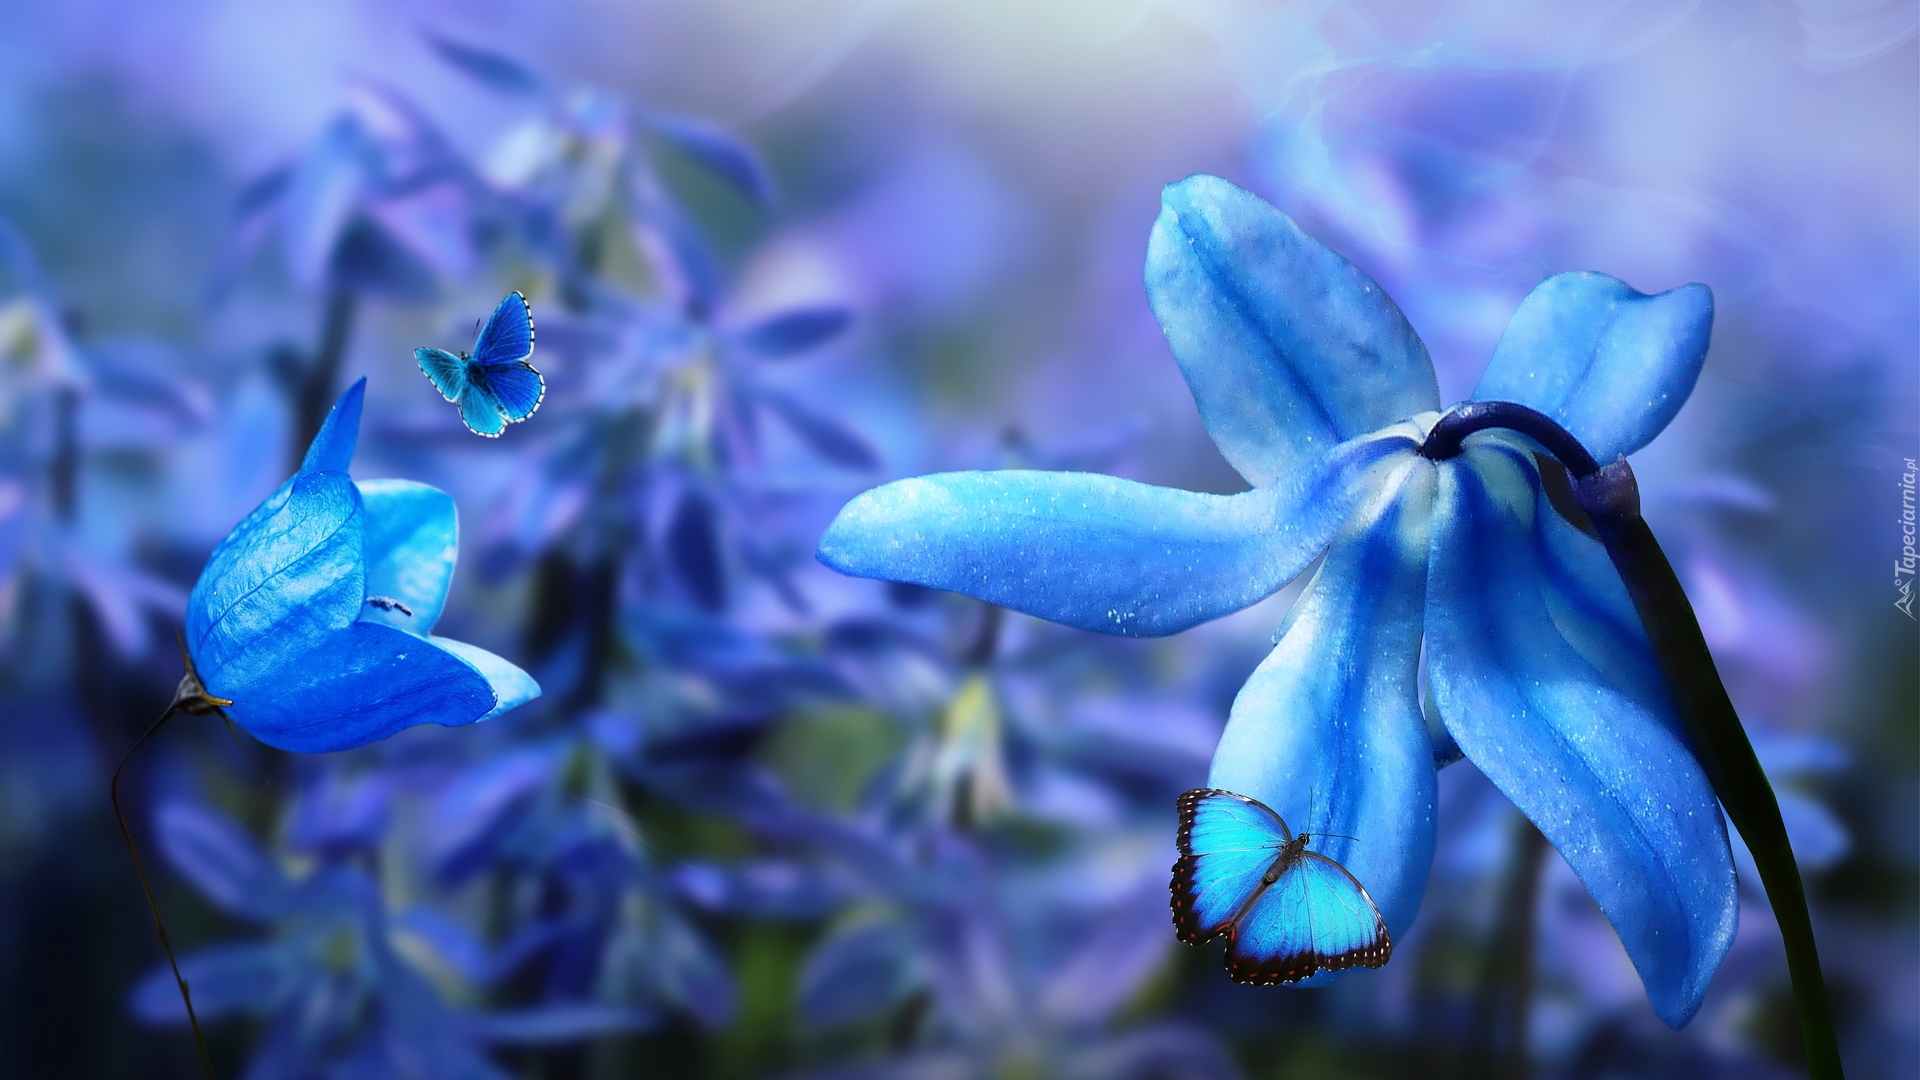 Kwiaty, Niebieskie, Płatki, Cebulica, Dzwonek, Motyle